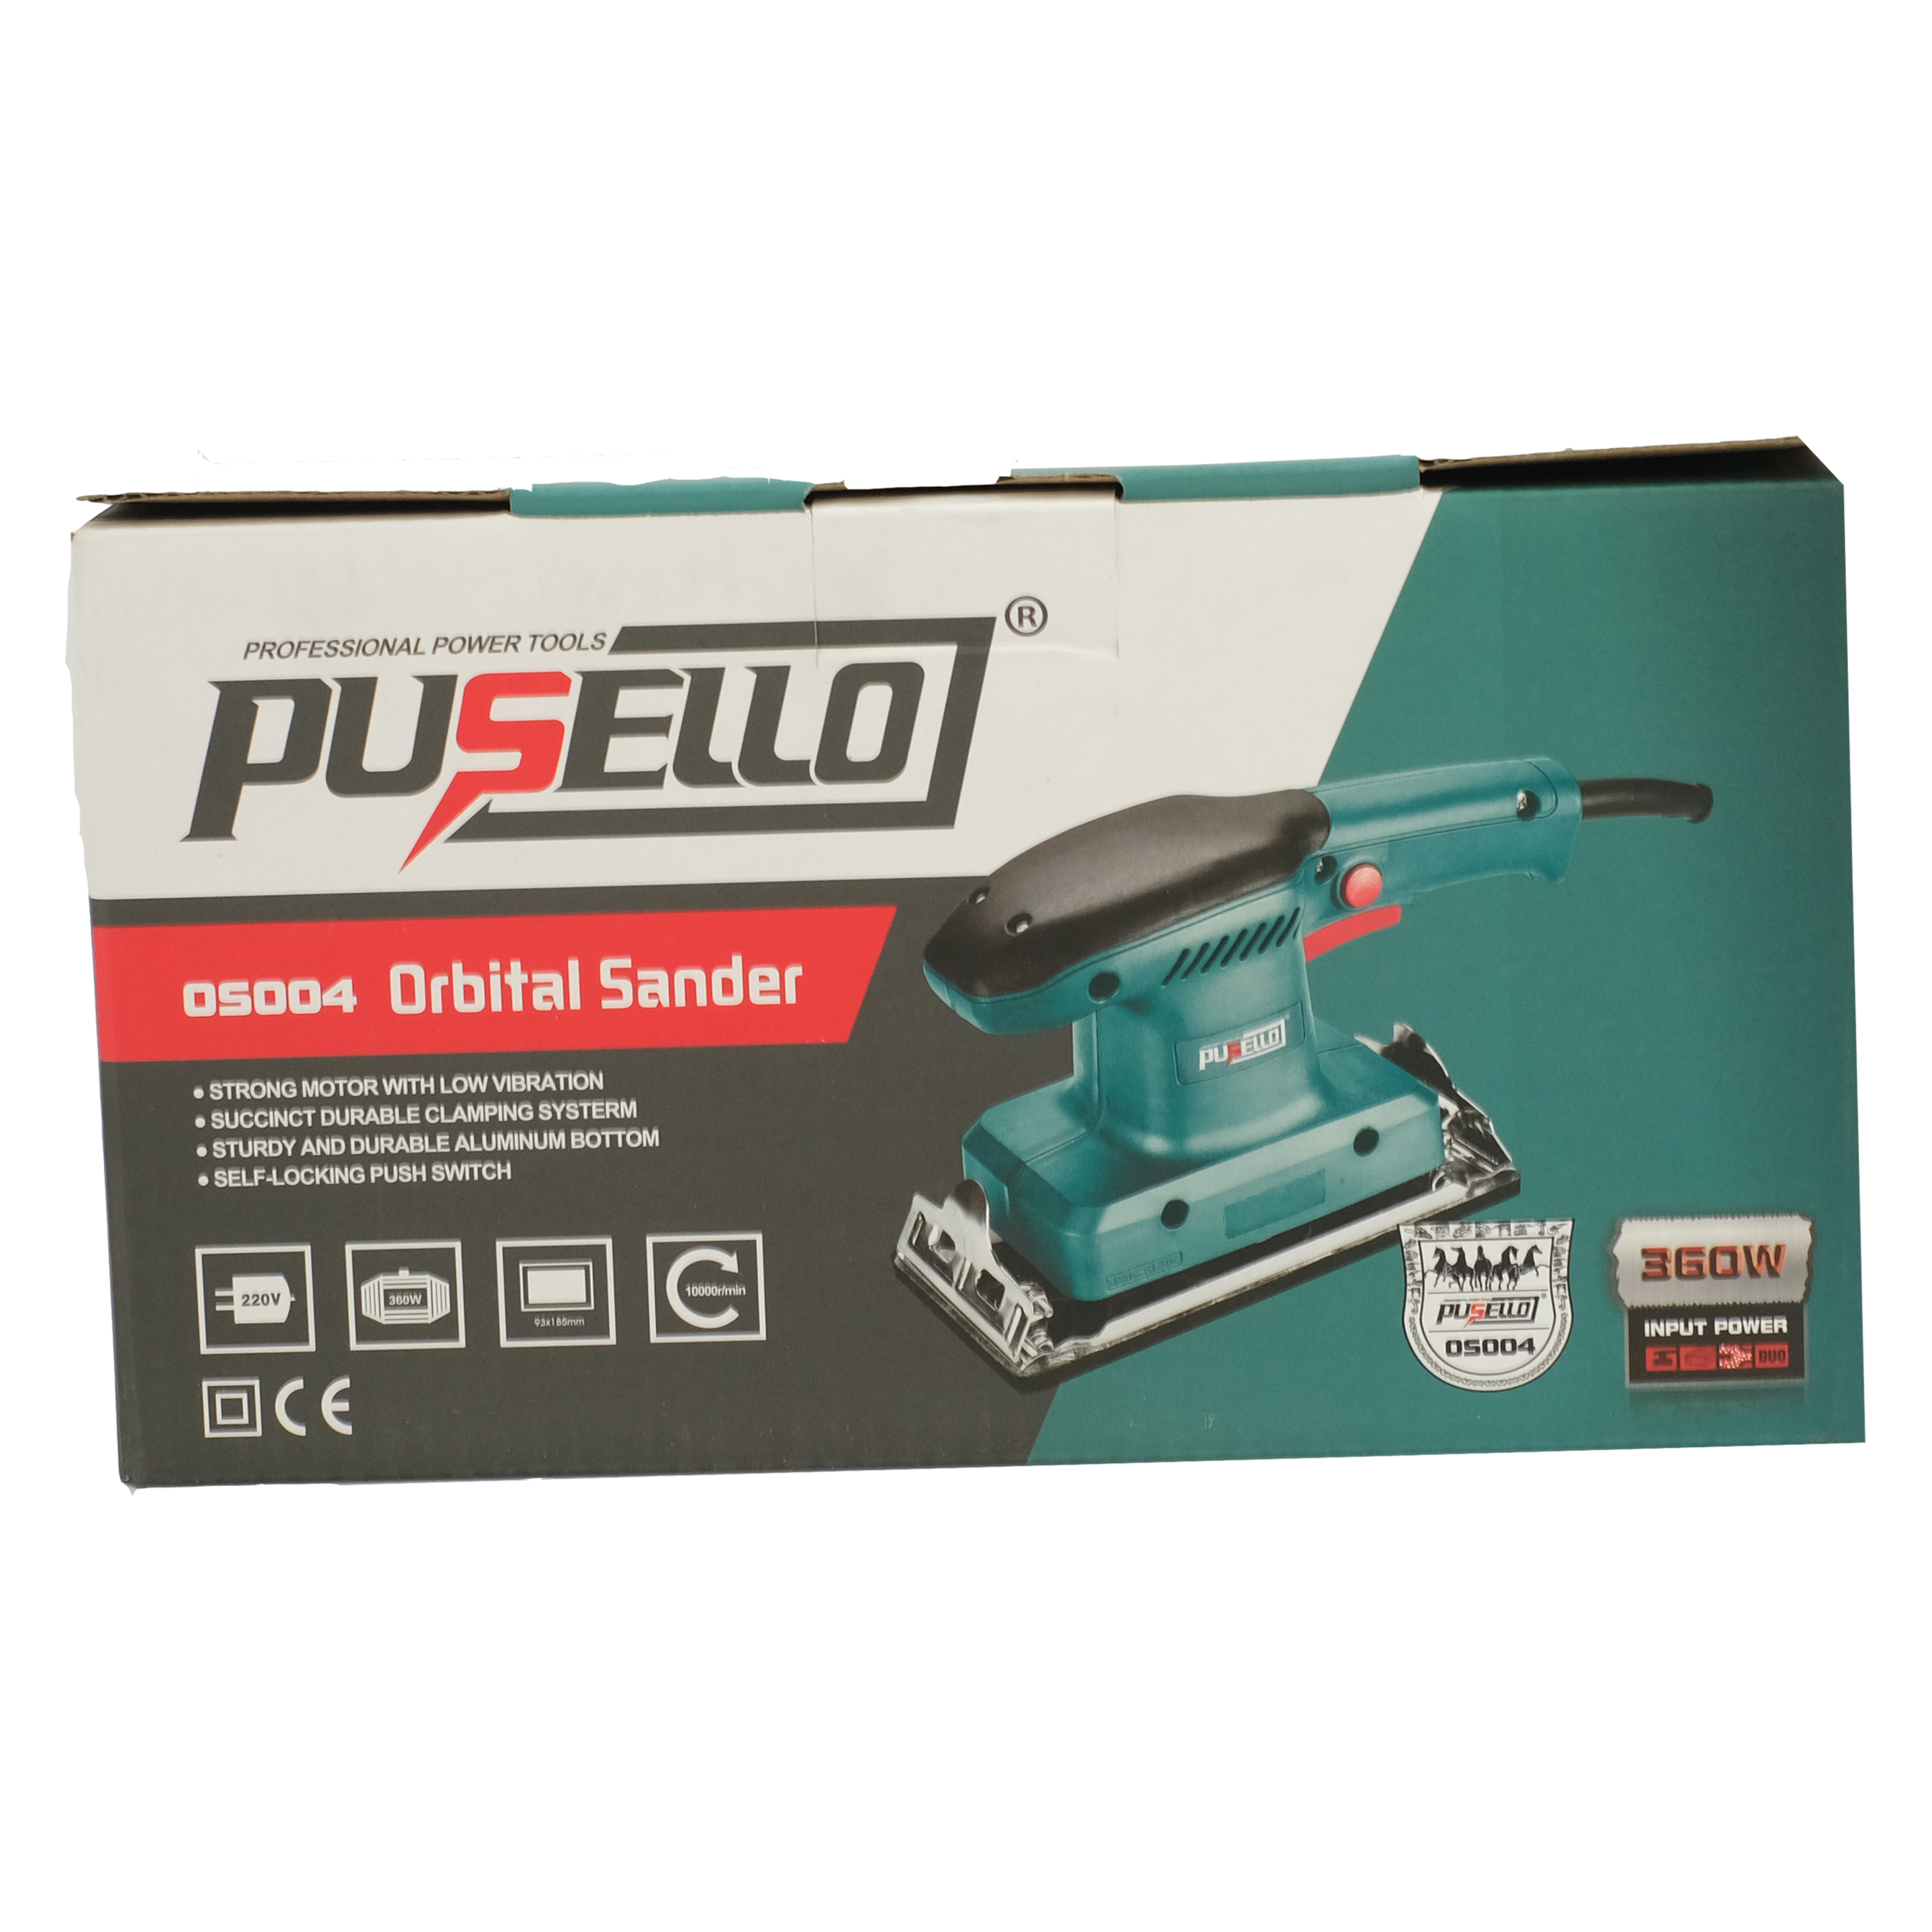 PUSELLO - ORBITAL SANDER  OS004